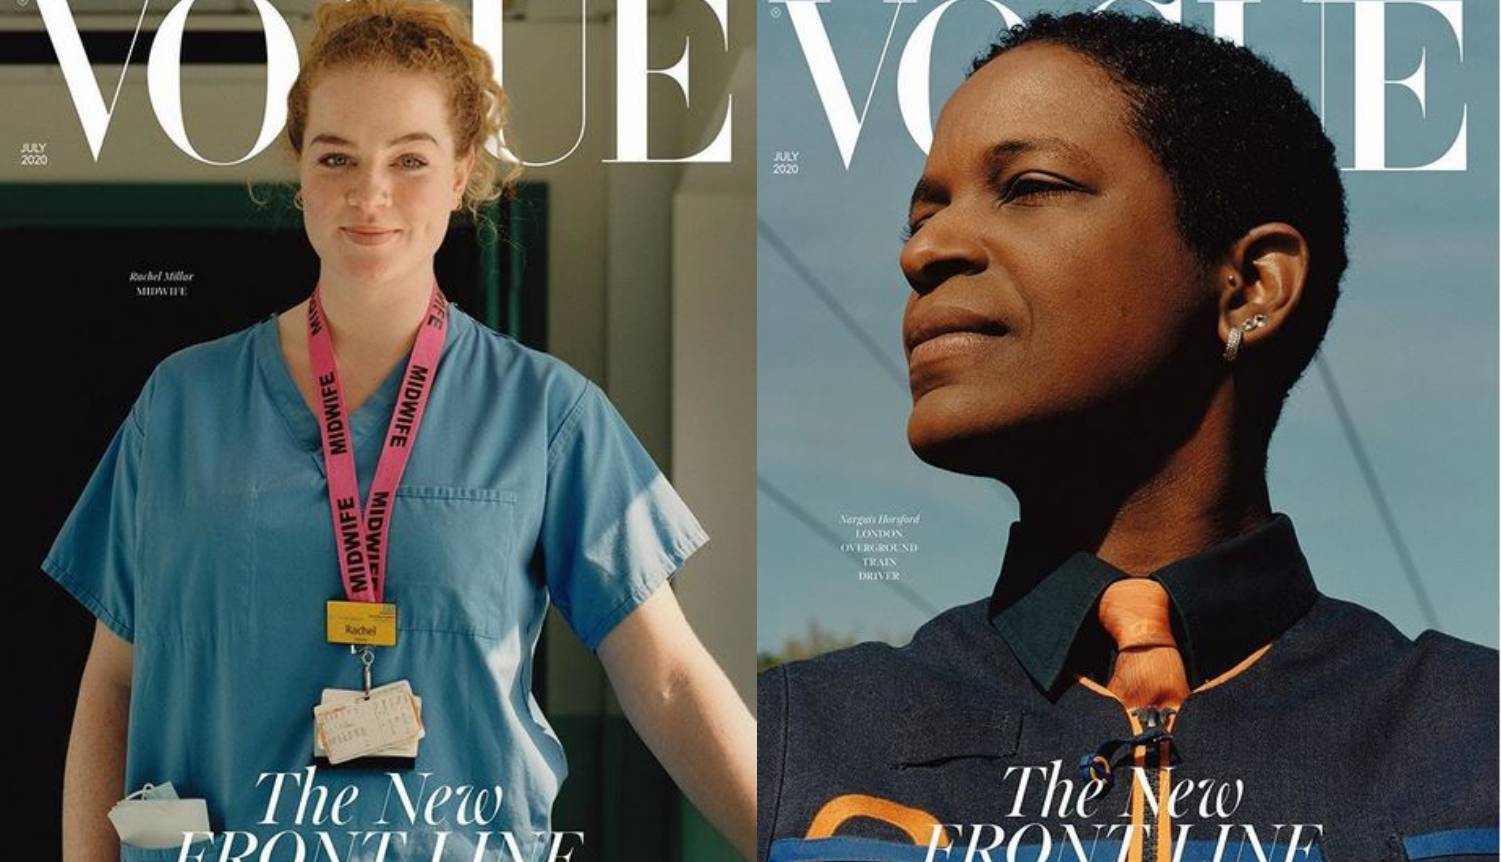 One ne rade od doma: Vogue umjesto modela na naslovnicu stavio junakinje prve linije